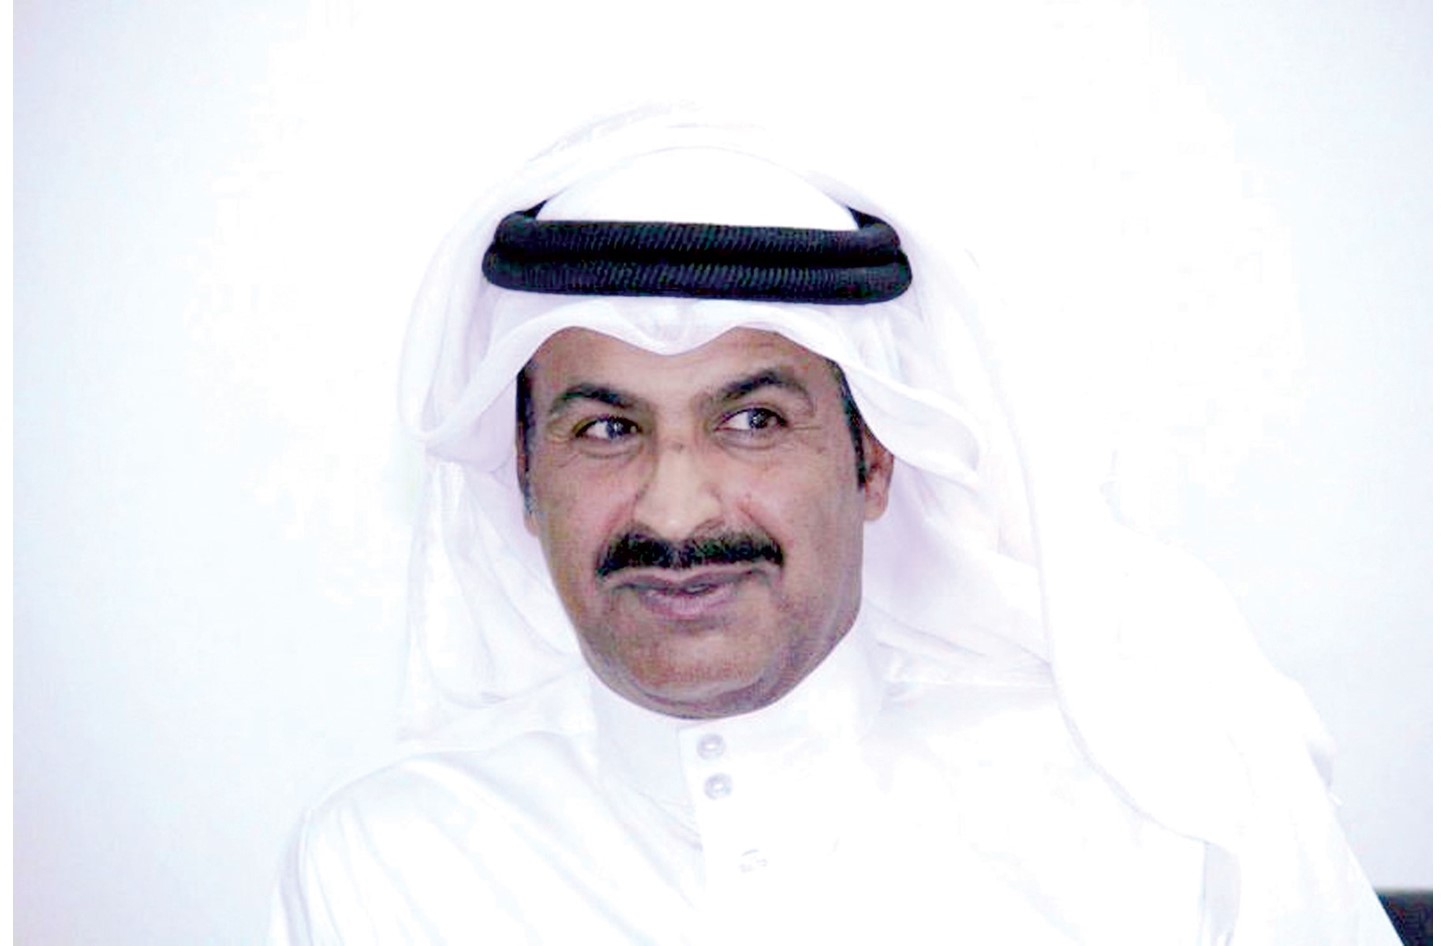 لجنة رياضات الموروث الشعبي تفتح باب التسجيل لمسابقة فارس الموروث صحيفة الأيام البحرينية 